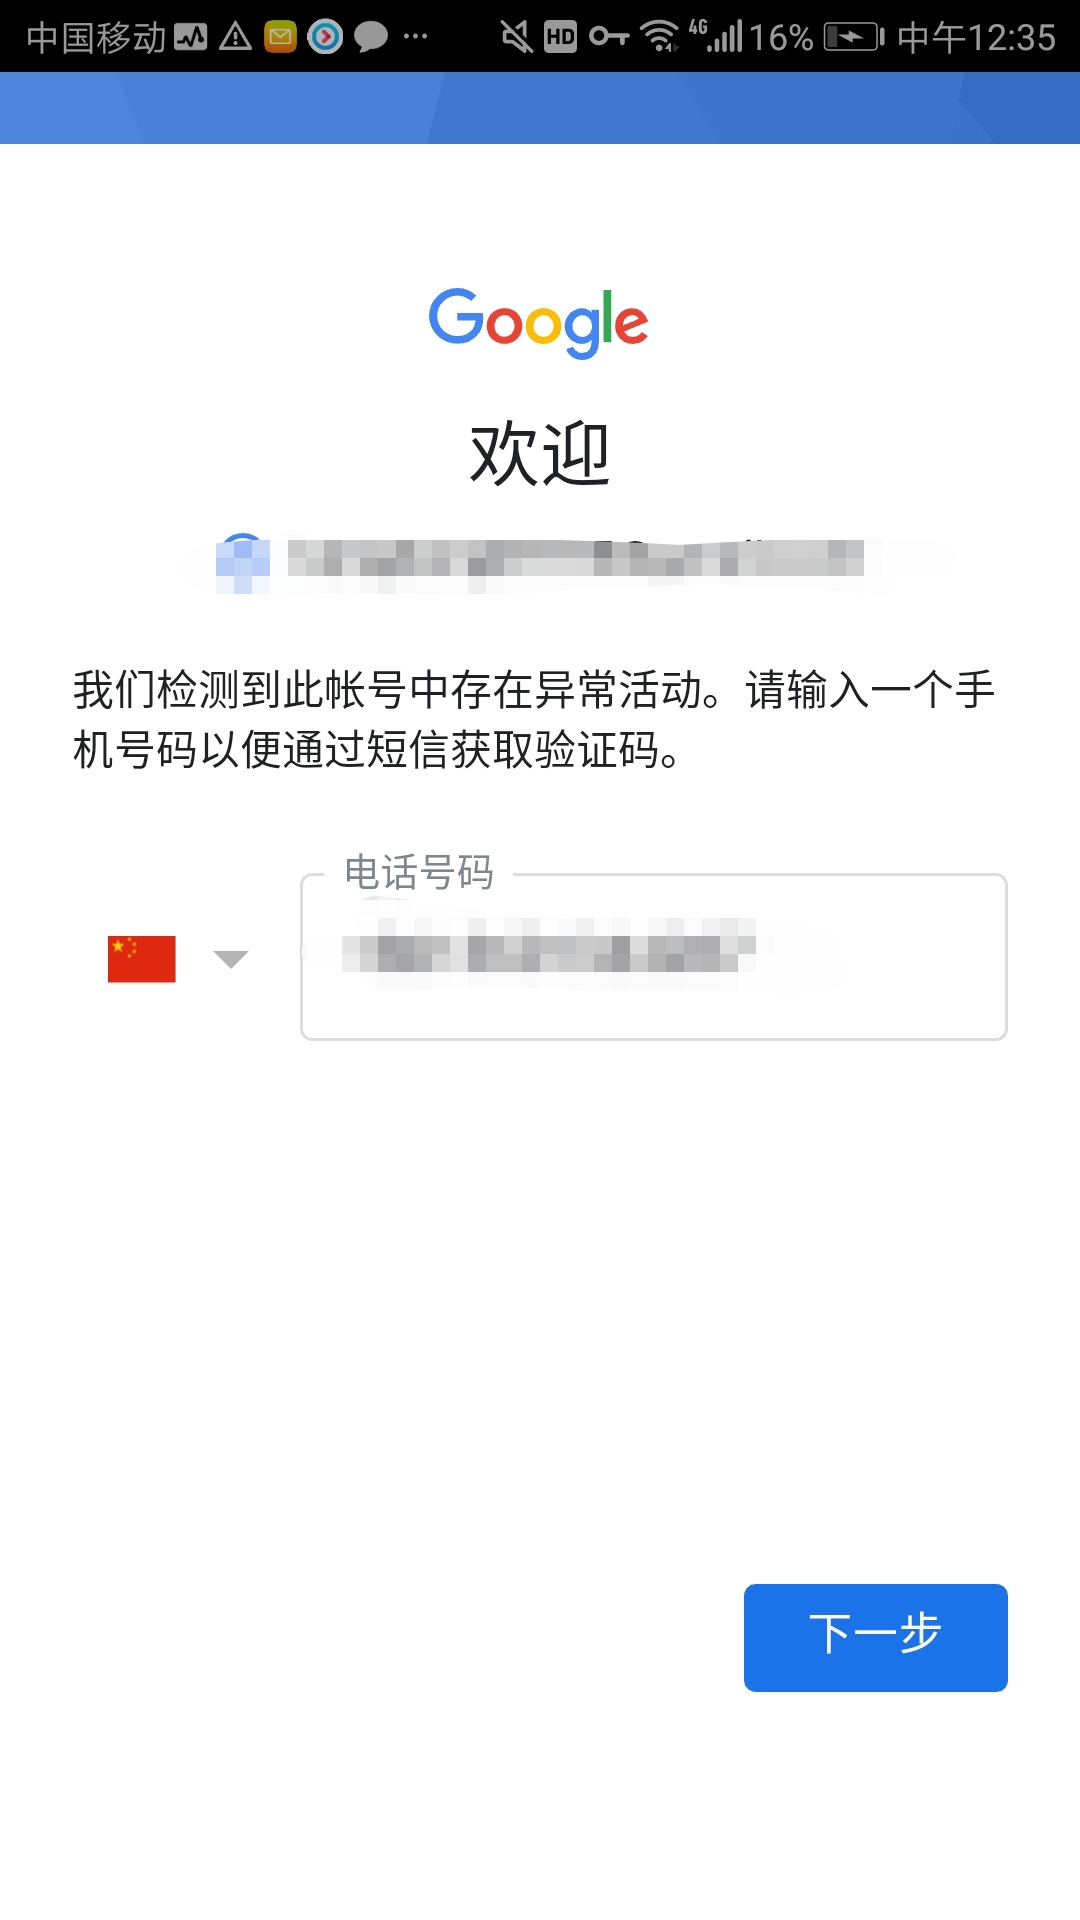 iOS日本免费账号最新_台湾ios账号共享最新_ios开发者账号 免费